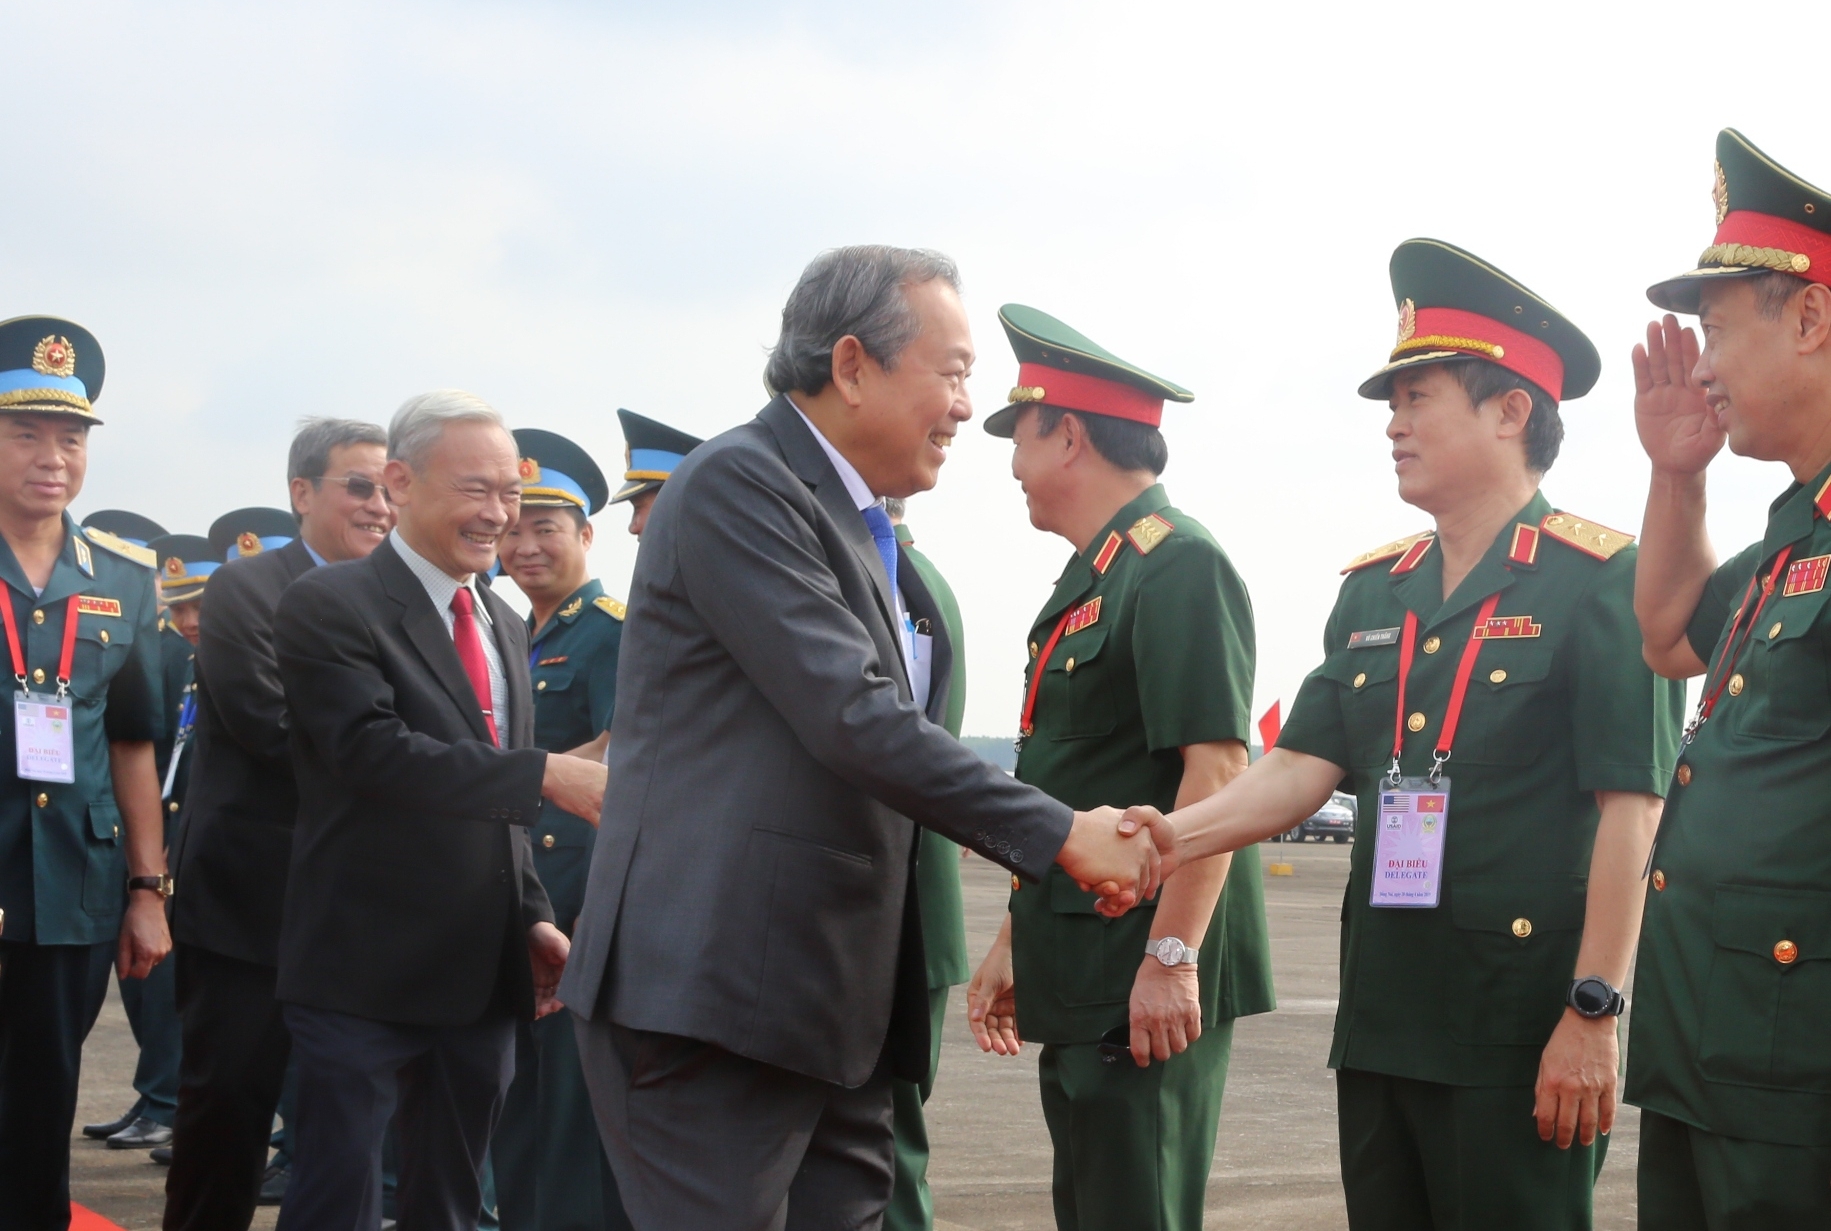 Phó Thủ tướng dự Lễ khởi động dự án xử lý dioxin sân bay Biên Hòa